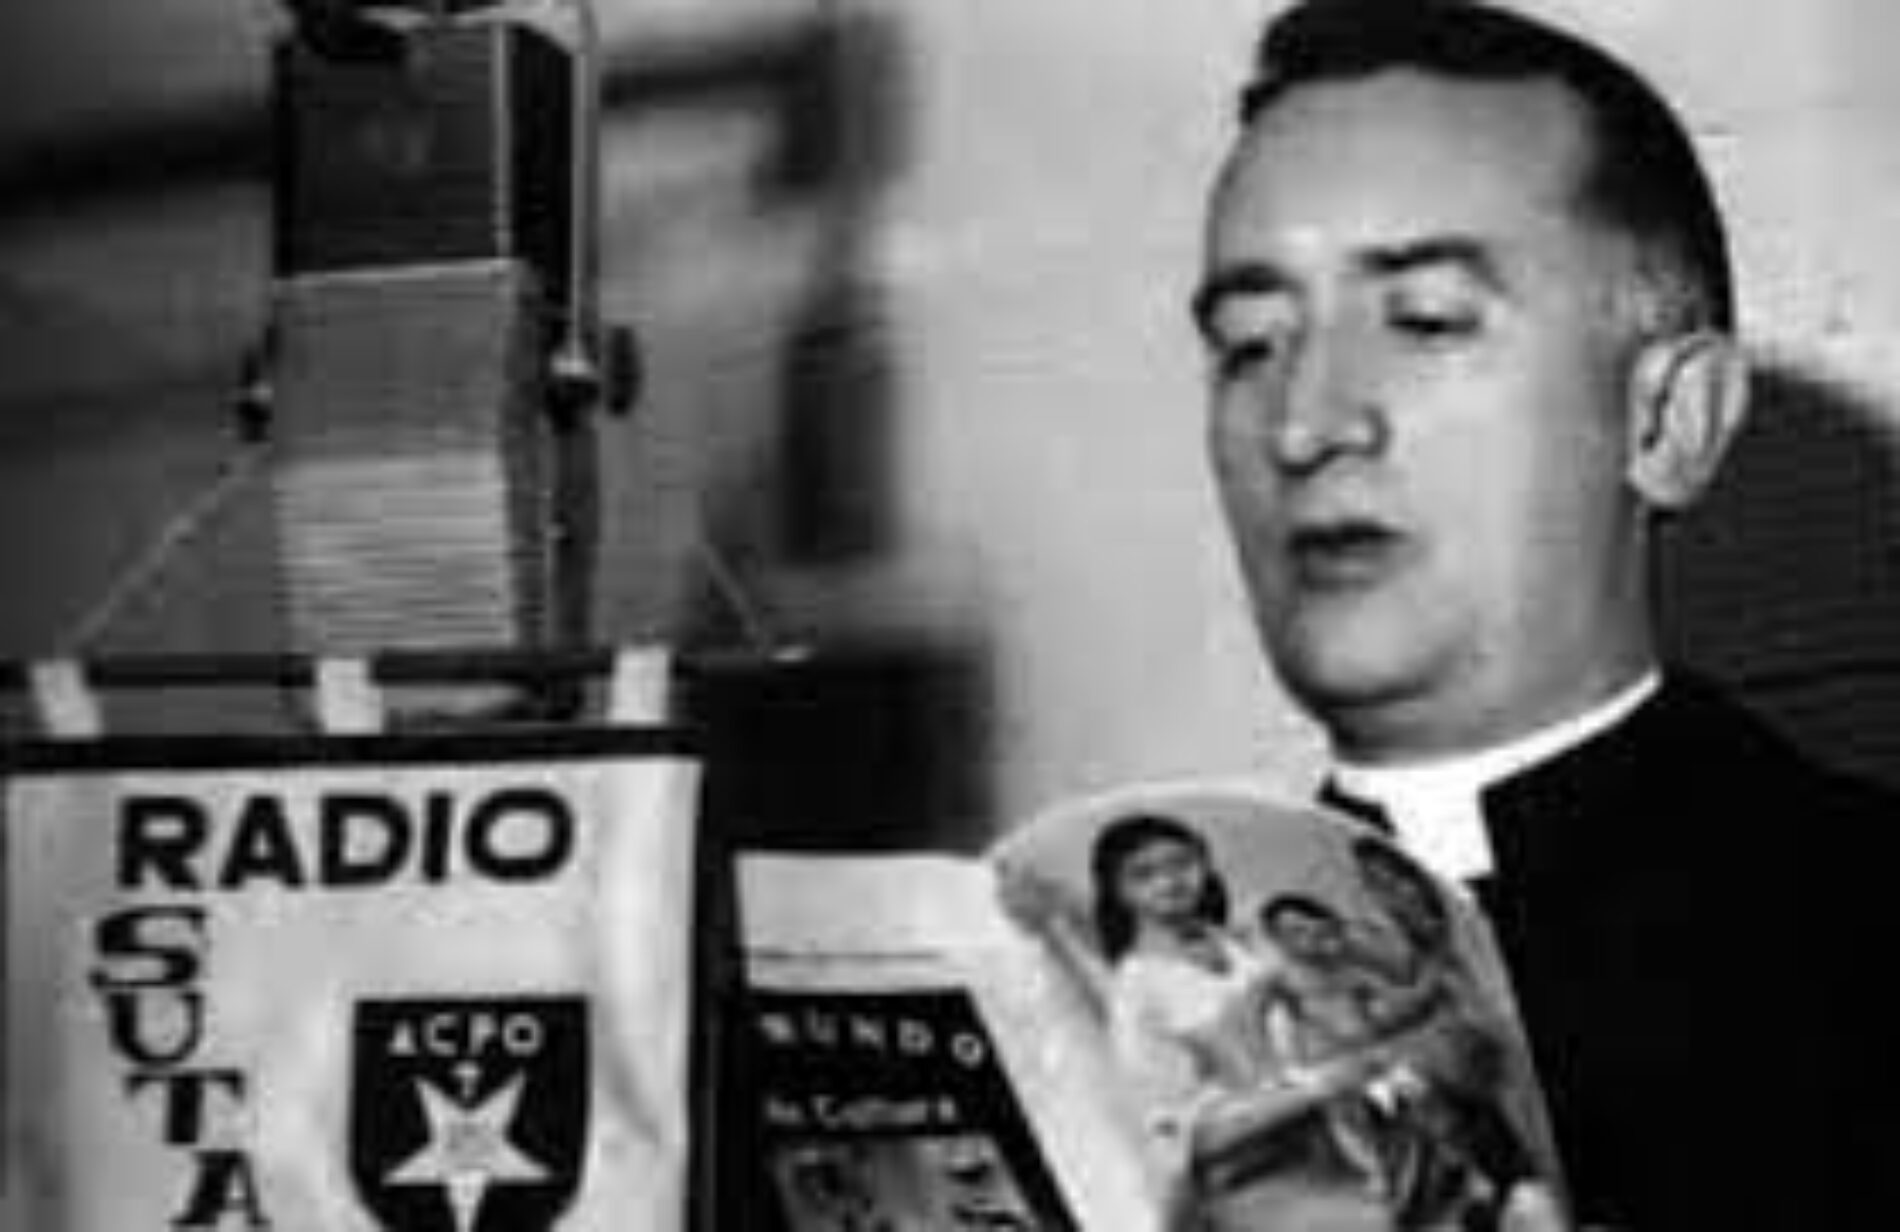 PANTALLA Y DIAL: 100 AÑOS DE MONSEÑOR SALCEDO, GIGANTE DE LA RADIO